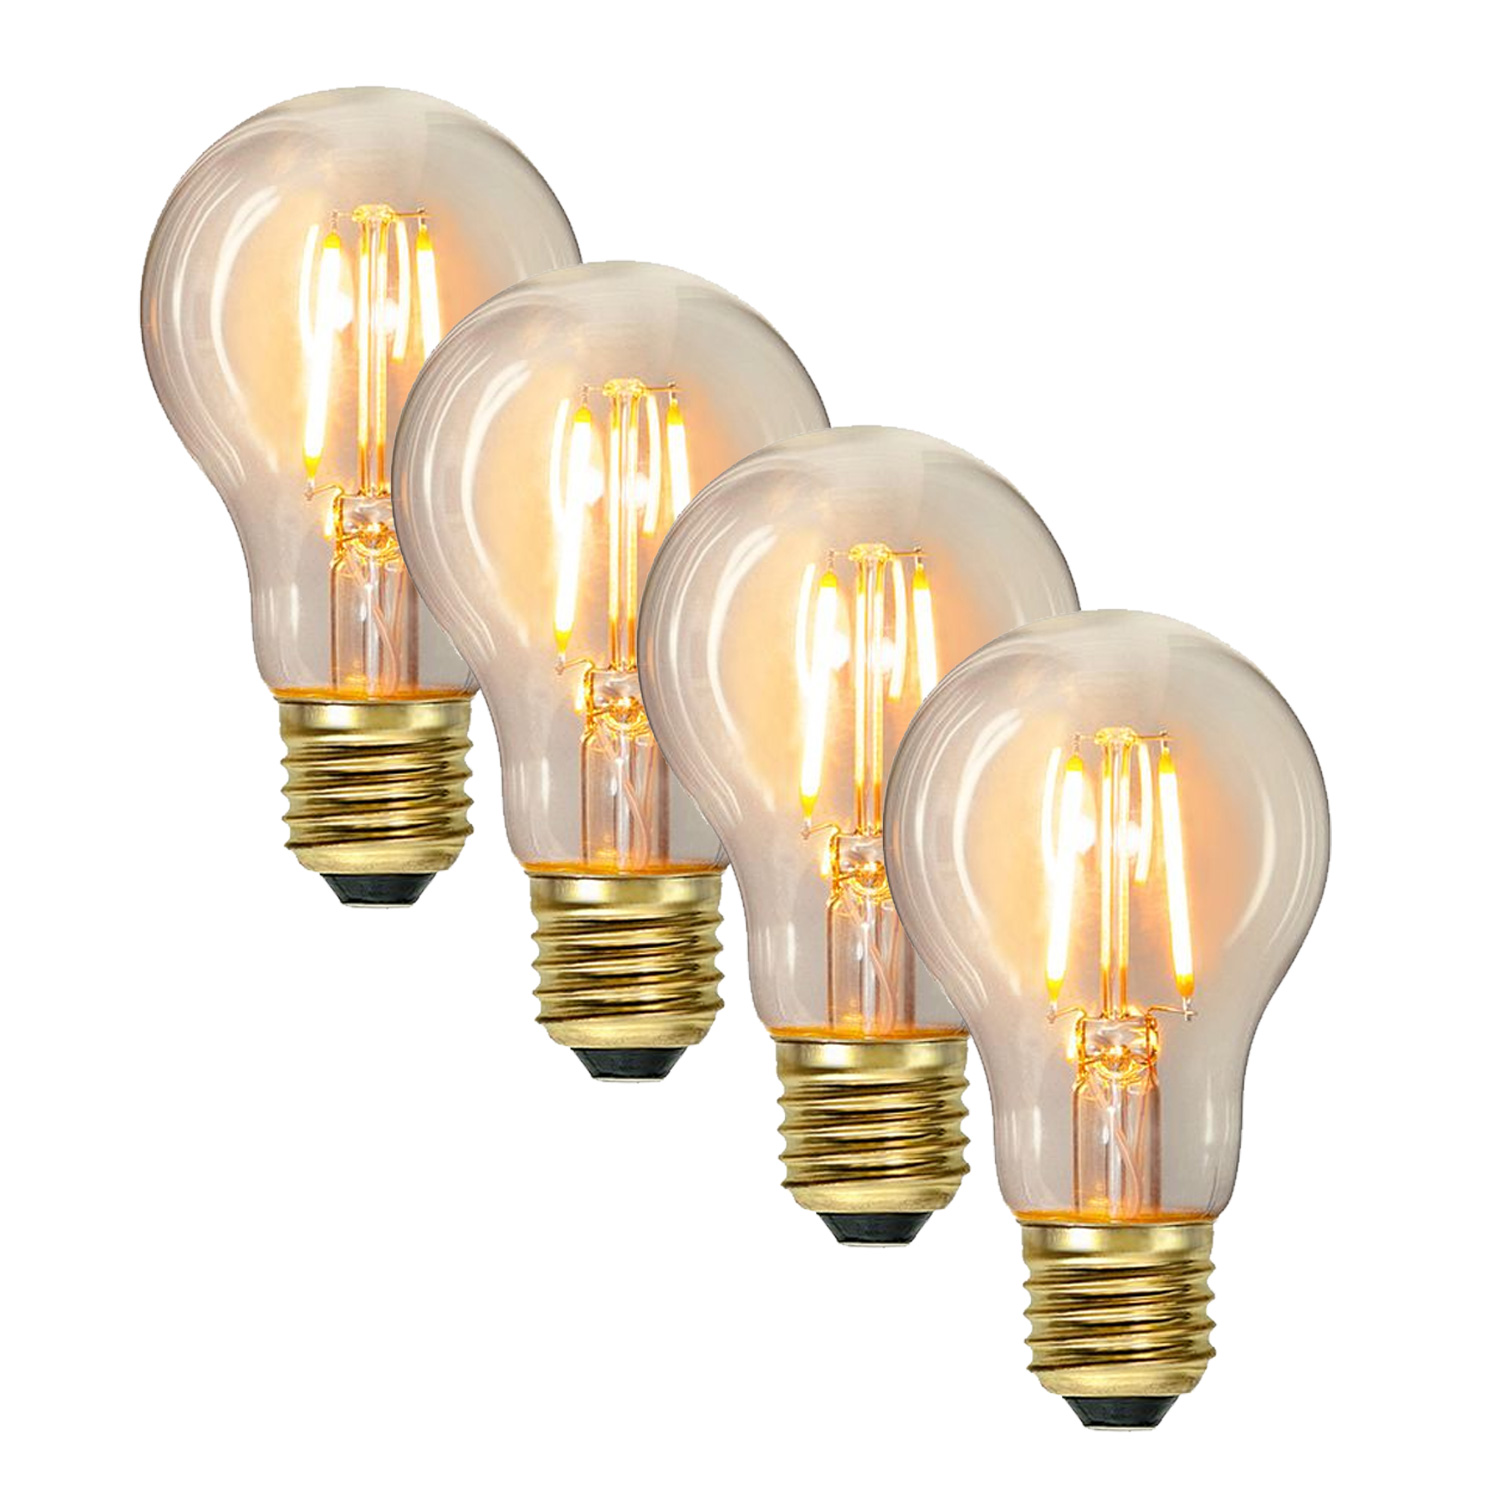 Illu-/Partylichterkette 5m - Außenlichterkette weiß - Made in Germany - 10  Edison LED Filamentlampen